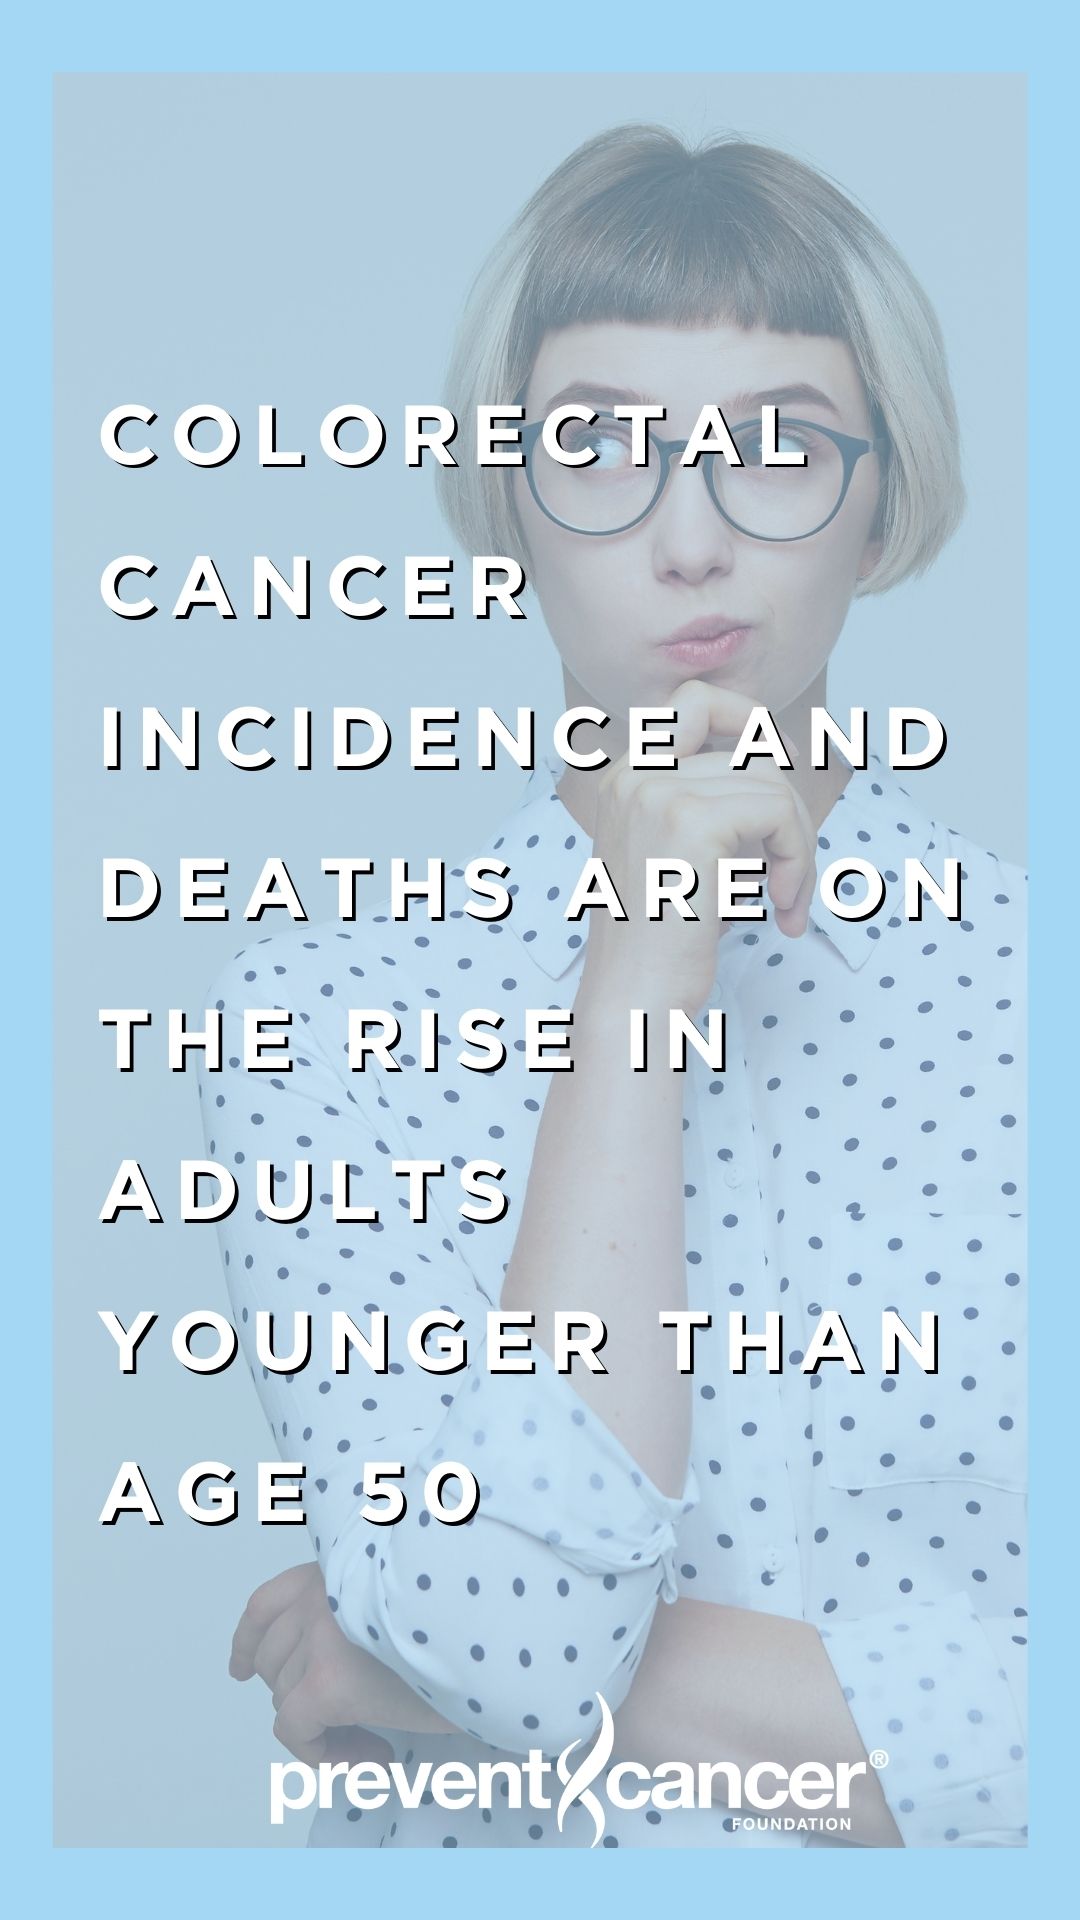 Colorectal Cancer Social Media Asset #3 (story)